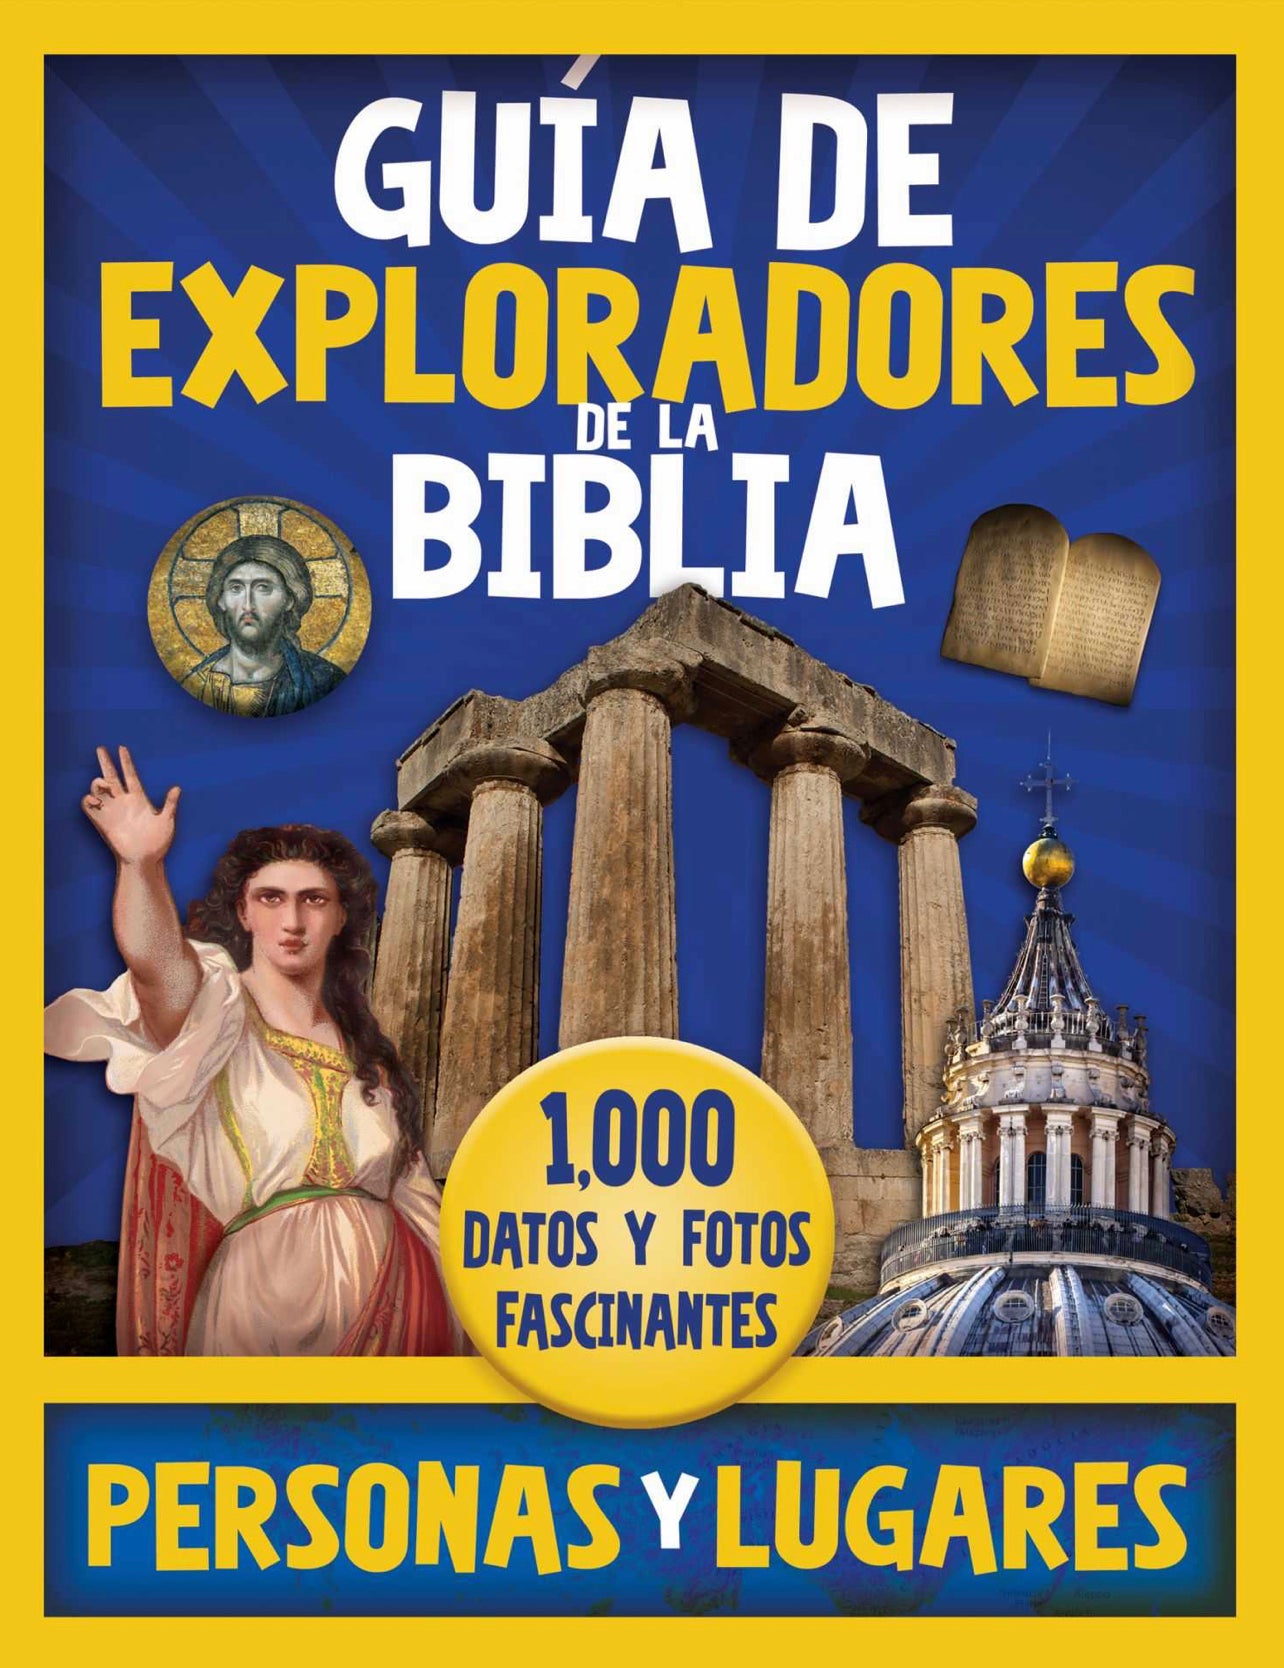 Guía de exploradores de la Biblia: 1,000 datos y fotos fascinantes, personas y lugares